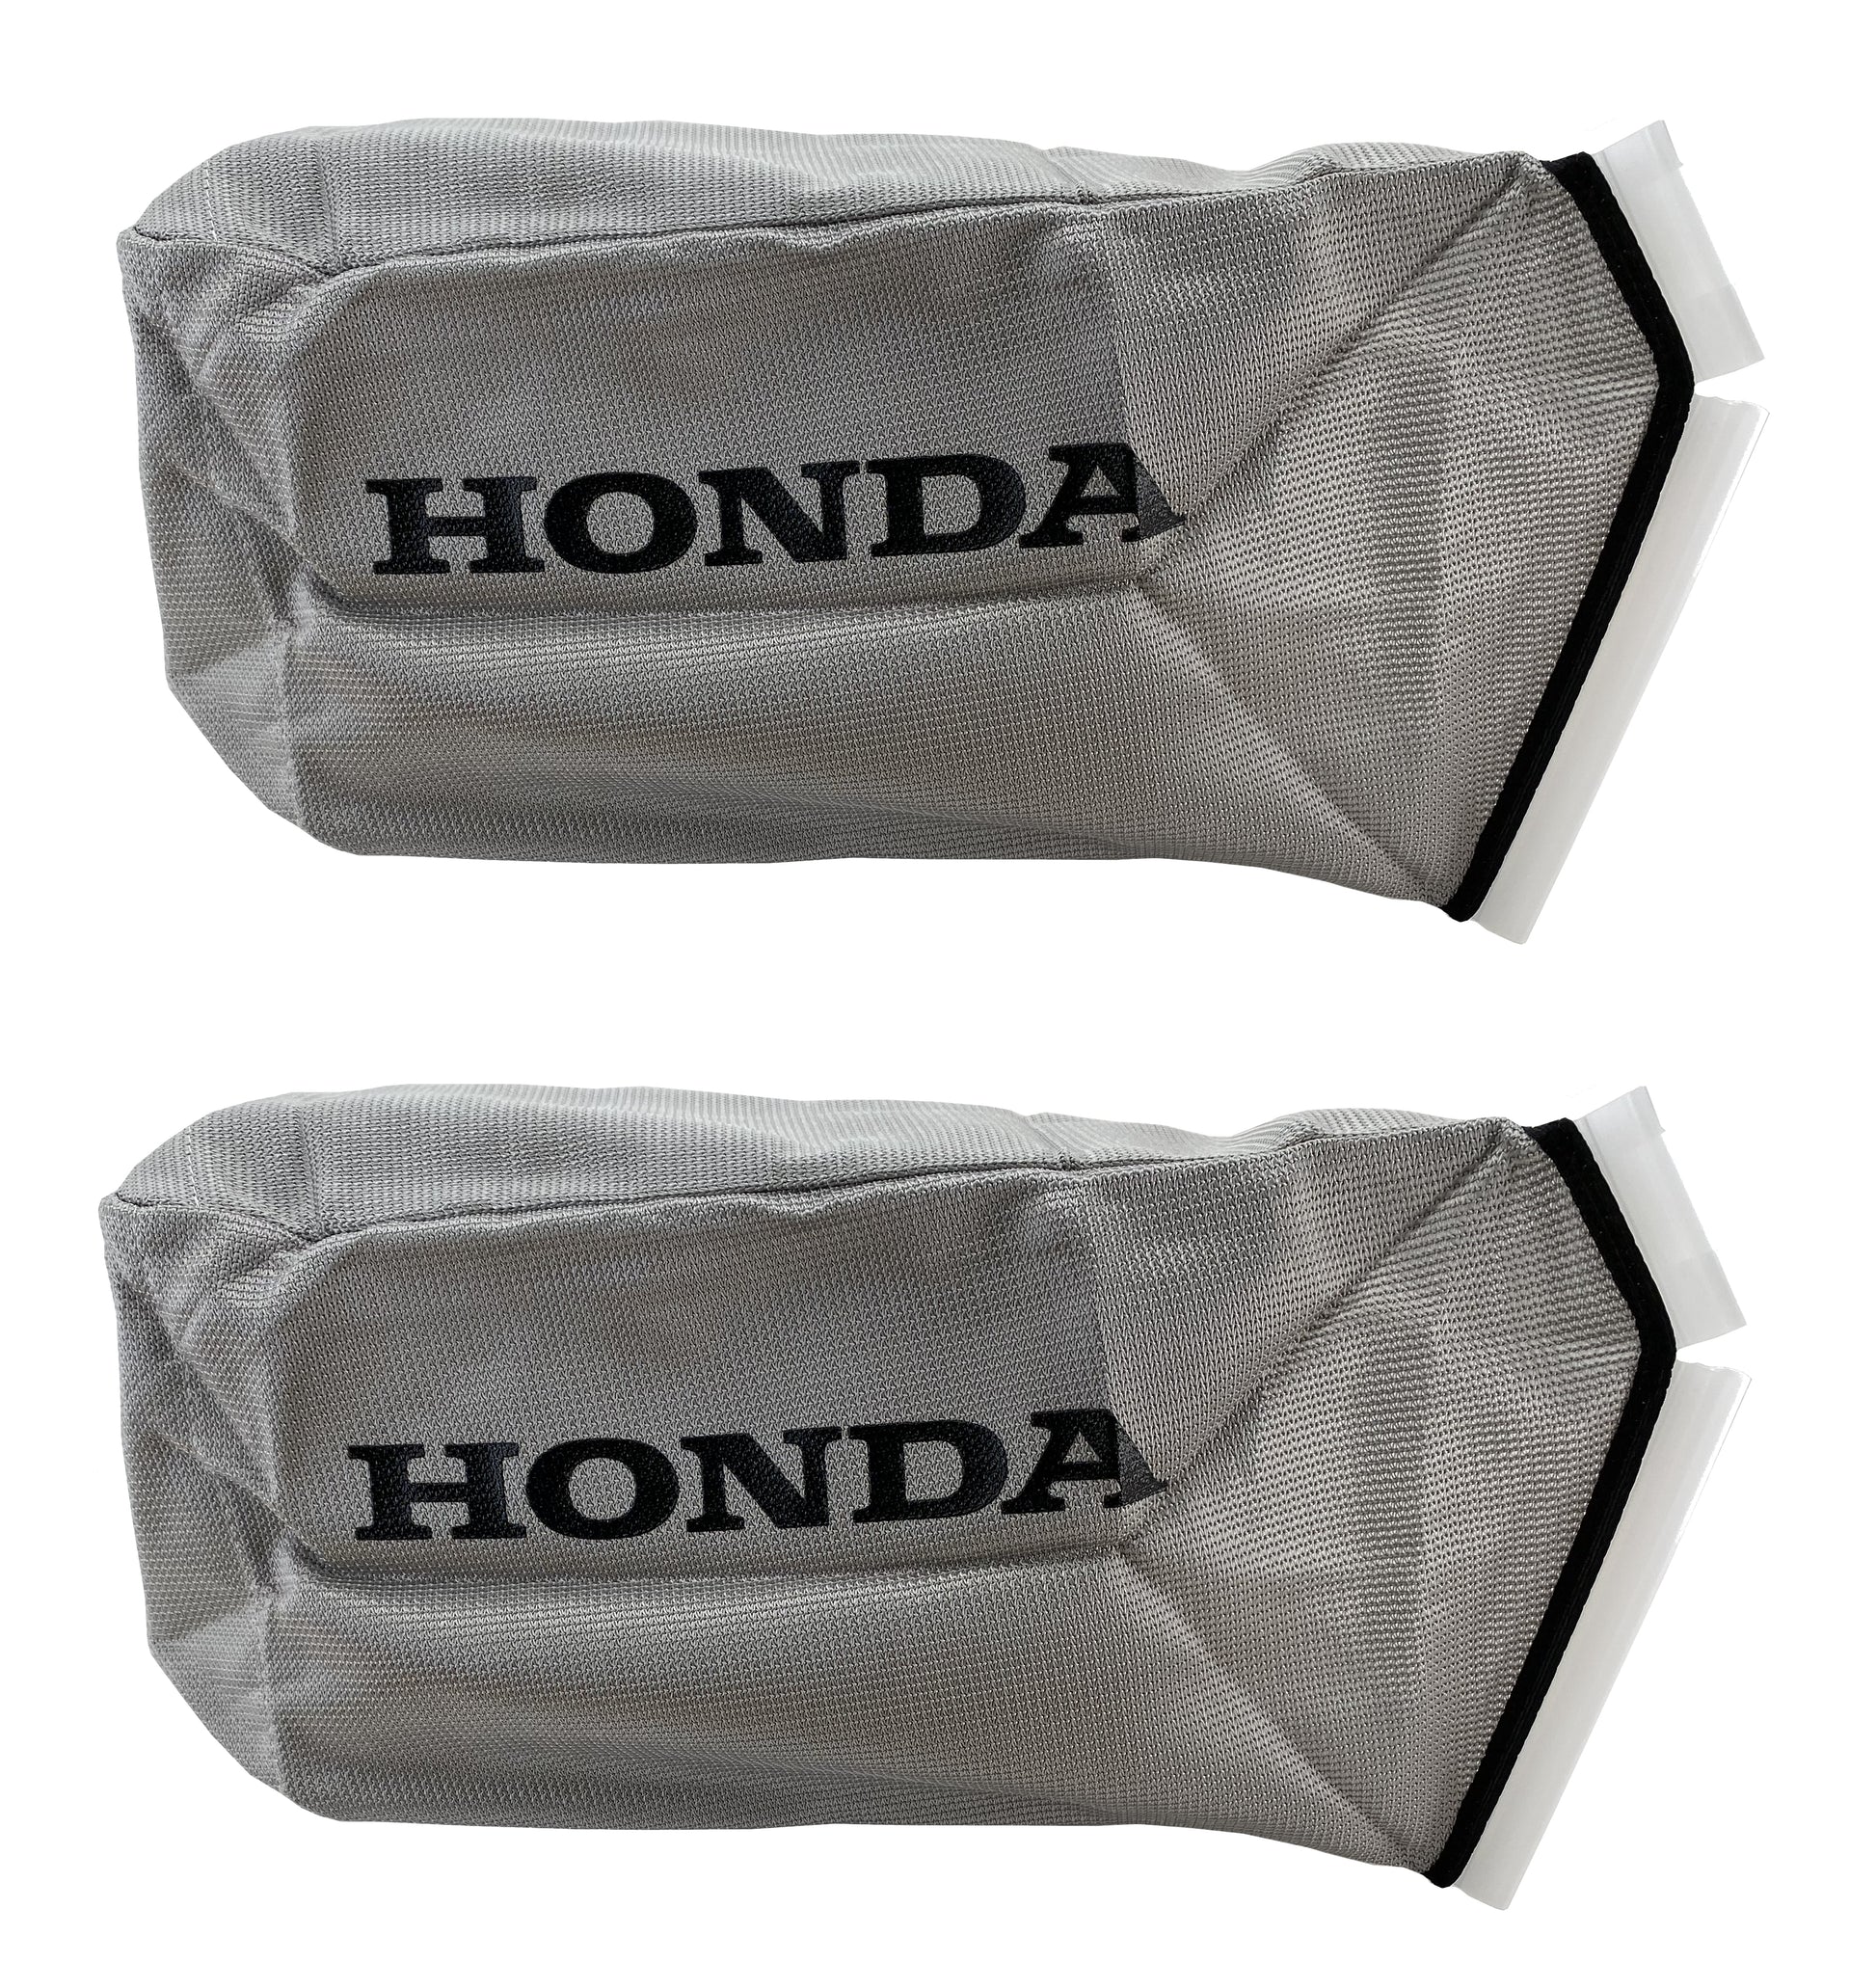 Honda Original Equipment Grass Bag Fabric 2 Pack 813 Vh7 D00 Agnlawn Com